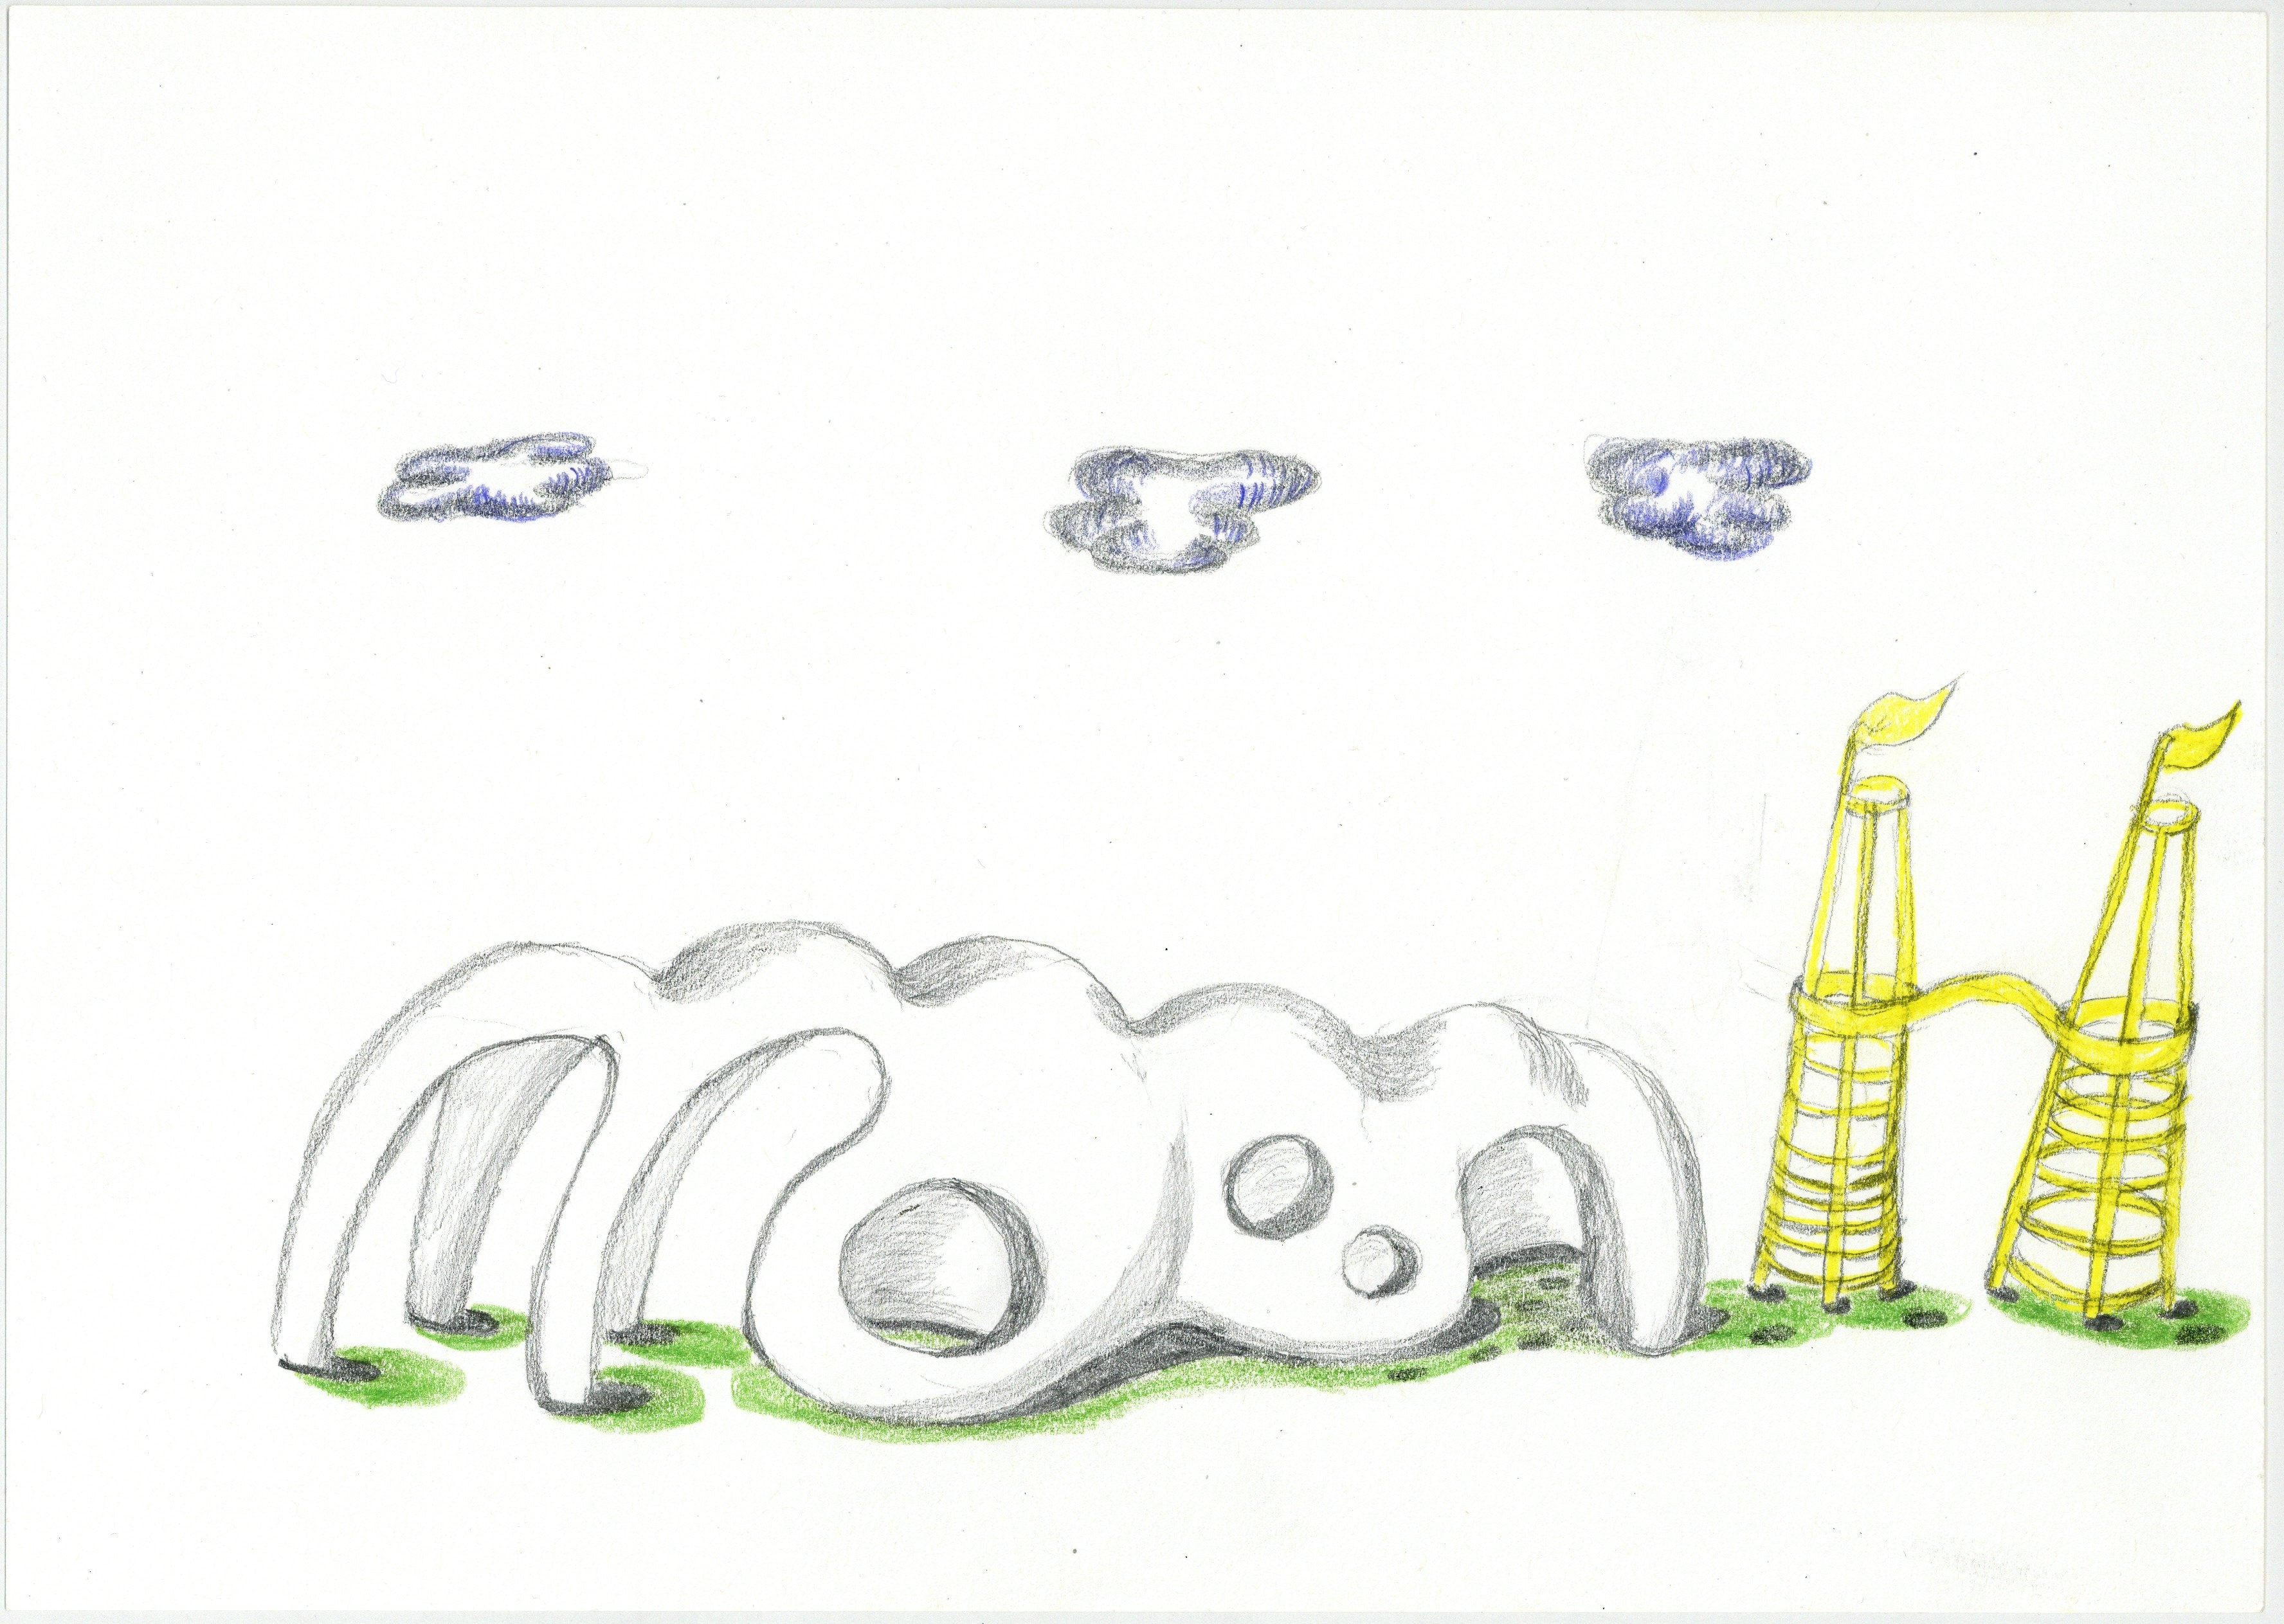 Zeichnung des Entwurfs "Co:Co" von Christine und Irene Hohenbüchler.